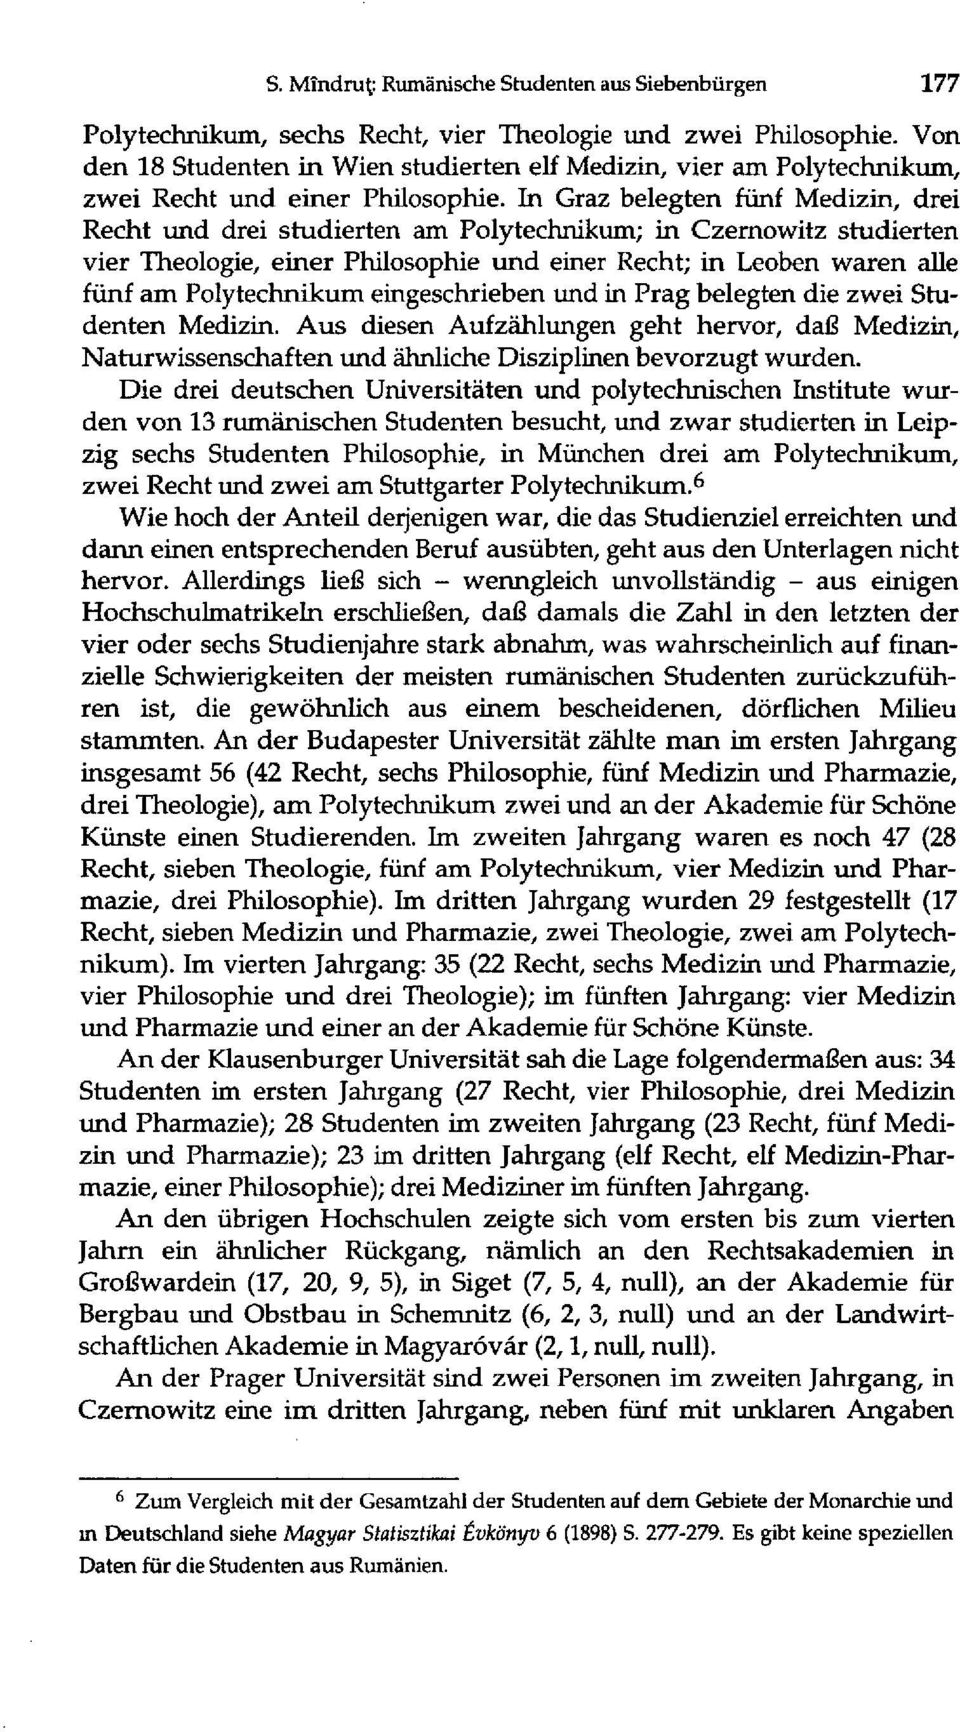 In Graz belegten fünf Medizin, drei Recht und drei studierten am Polytechnikum; in Czernowitz studierten vier Theologie, einer Philosophie und einer Recht; in Leoben waren alle fünf am Polytechnikum